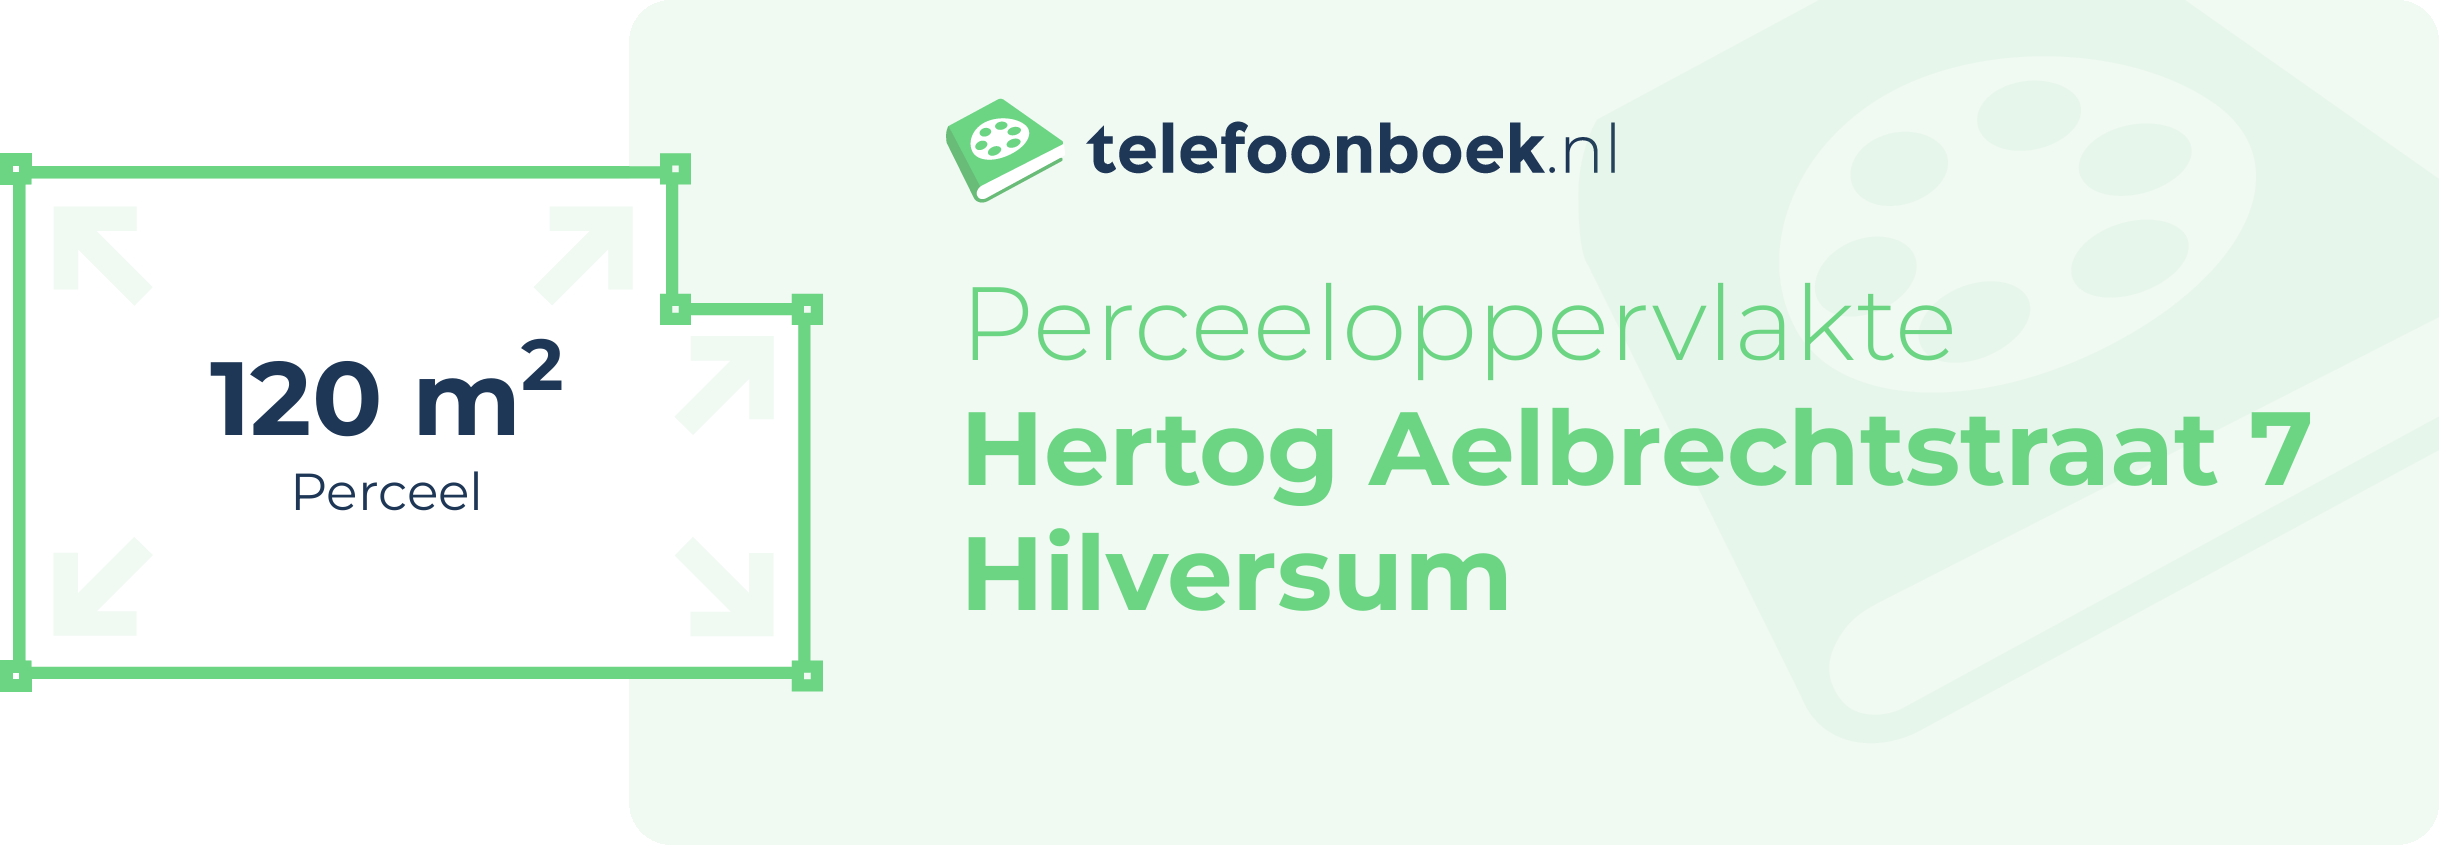 Perceeloppervlakte Hertog Aelbrechtstraat 7 Hilversum